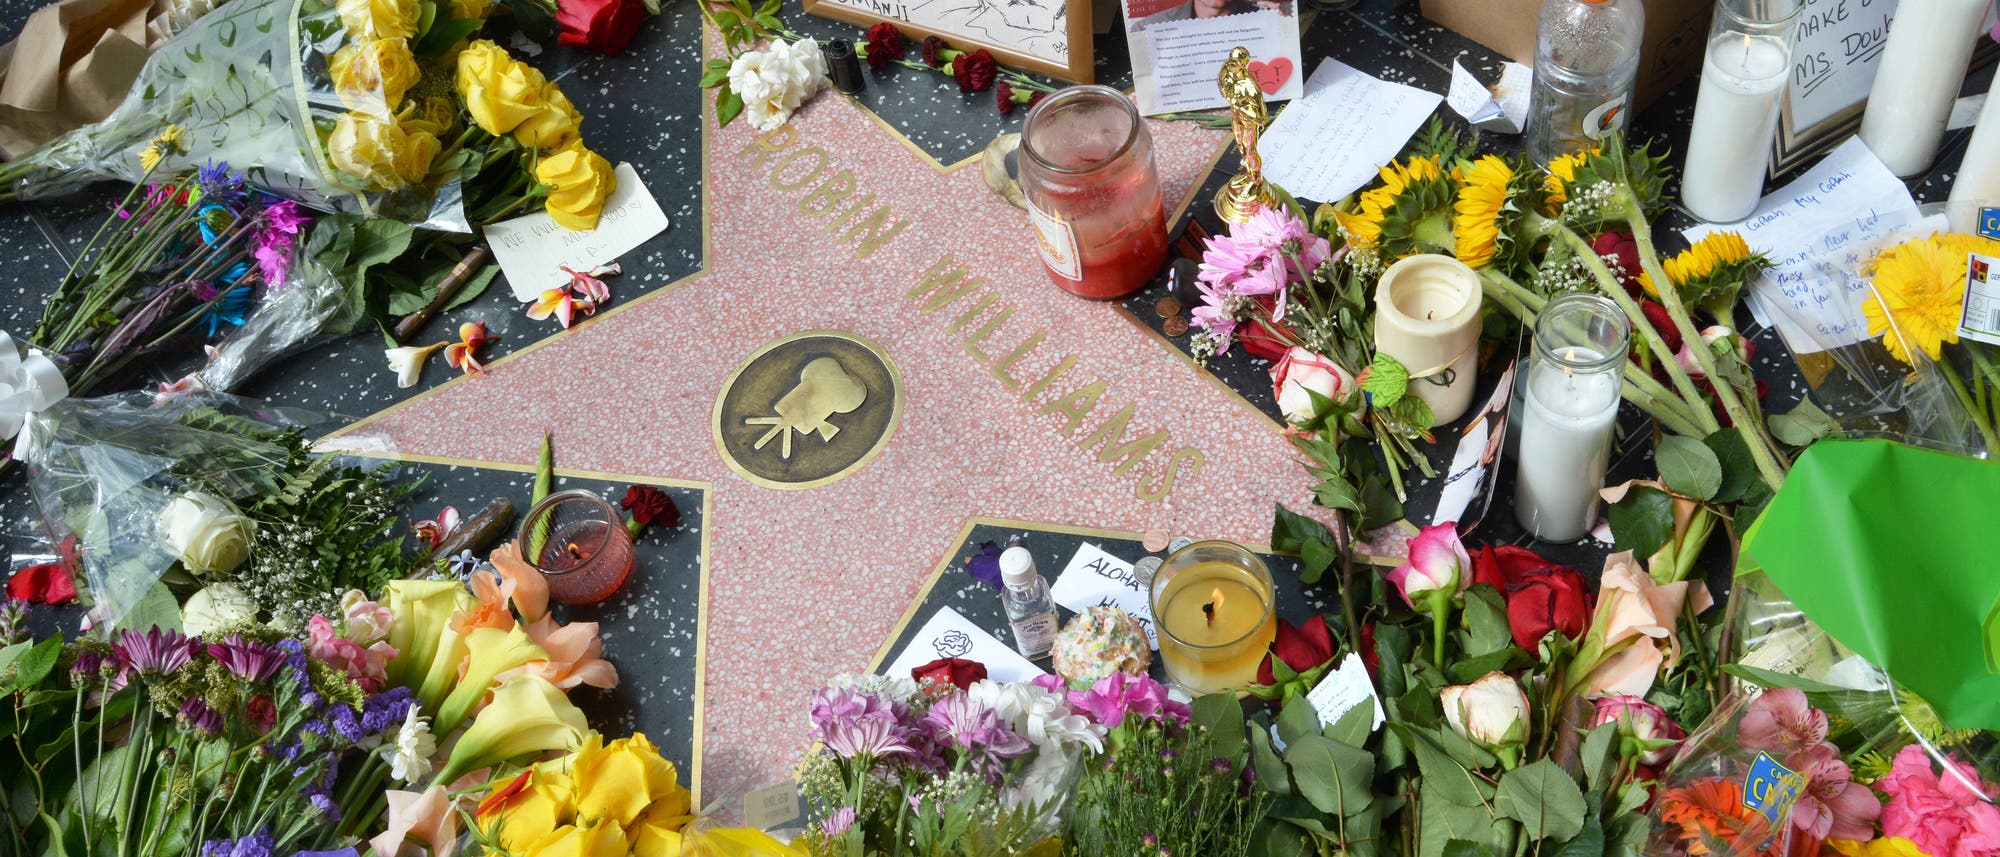 Trauernde legen am Walk of Fame Blumen auf dem Stern von Robin Williams nieder.